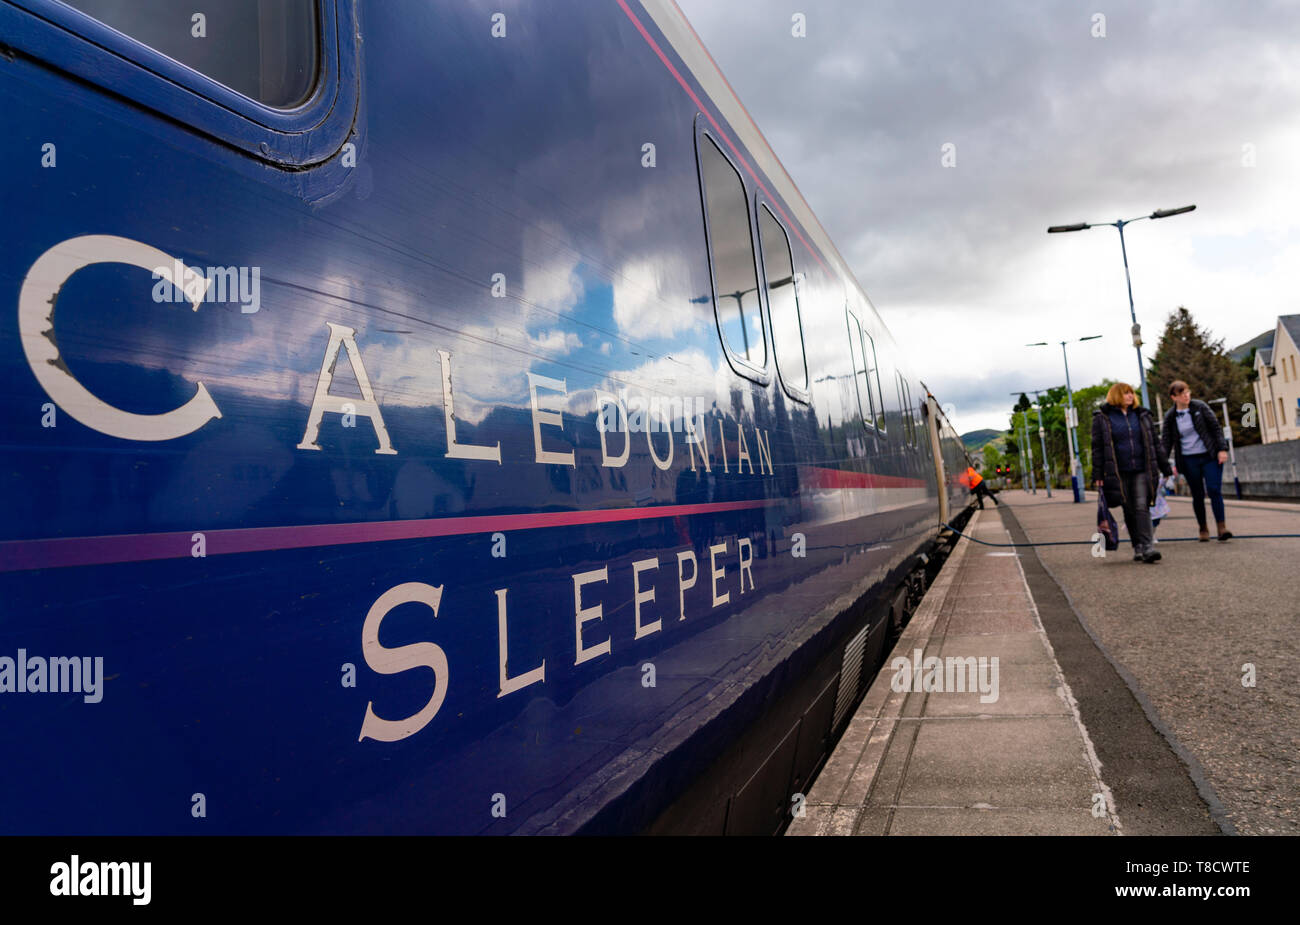 Caledonian Sleeper carrello a Fort William stazione, Scotland, Regno Unito Foto Stock